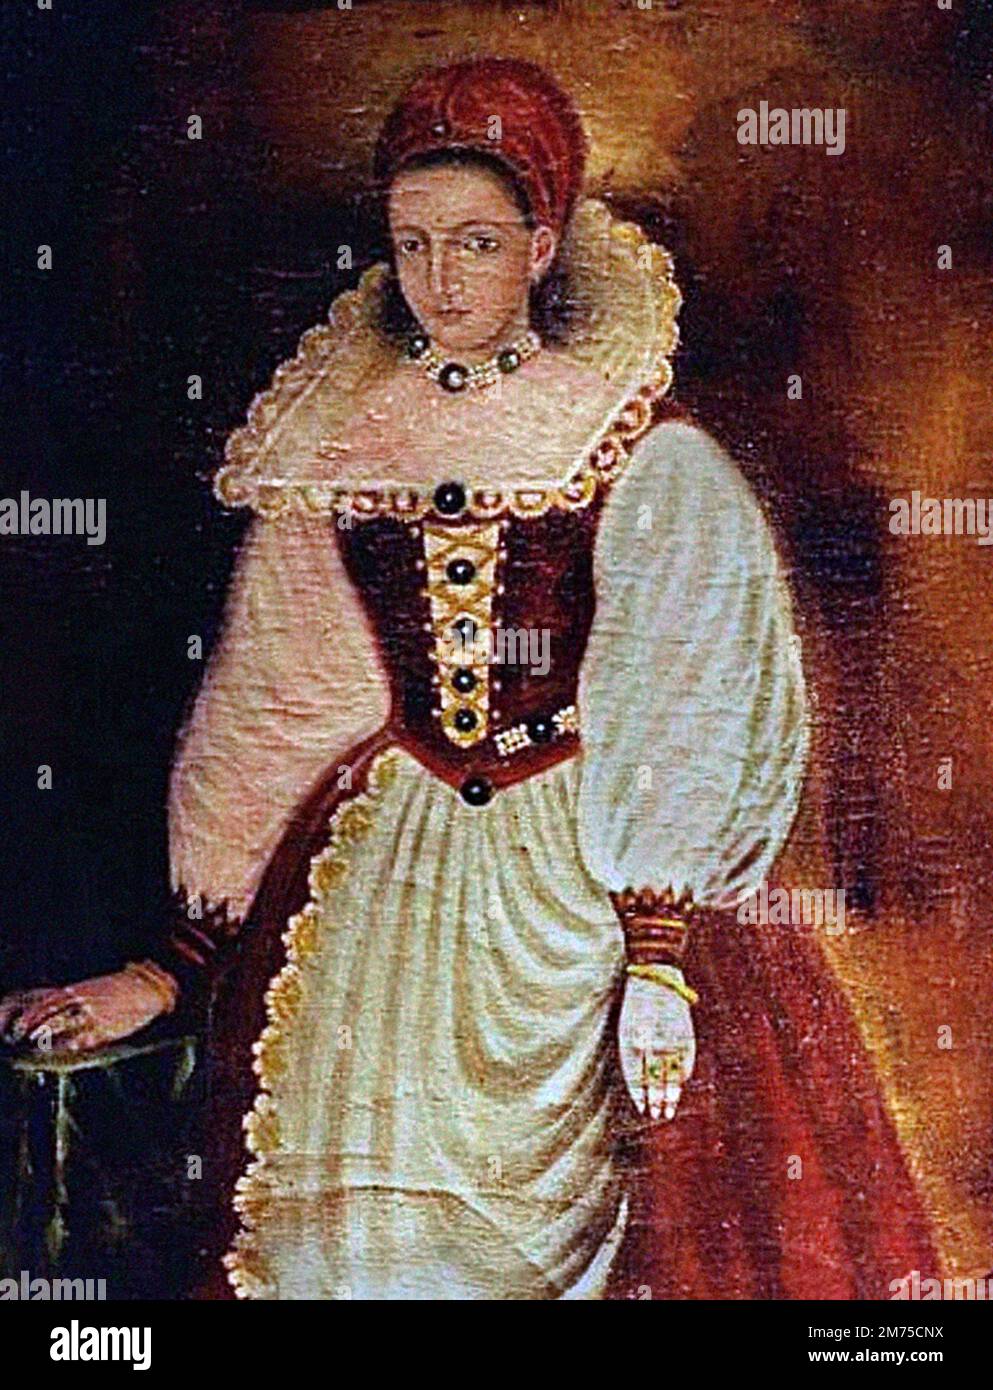 Elisabeth Báthory. Porträt von Gräfin Elizabeth Báthory de Ecsed (1560-1614), Kopie eines verlorenen Originals, das 1585 gemalt wurde. Bathory war eine ungarische Adlige und mutmaßlicher Serienmörder aus der Familie Báthory, die im Königreich Ungarn (jetzt Slowakei) Land besaß. Sie und vier ihrer Diener wurden beschuldigt, zwischen 1590 und 1610 Hunderte von Mädchen und Frauen gefoltert und getötet zu haben. Ihre Diener wurden vor Gericht gestellt und verurteilt, während Báthory bis zu ihrem Tod eingesperrt war. Stockfoto